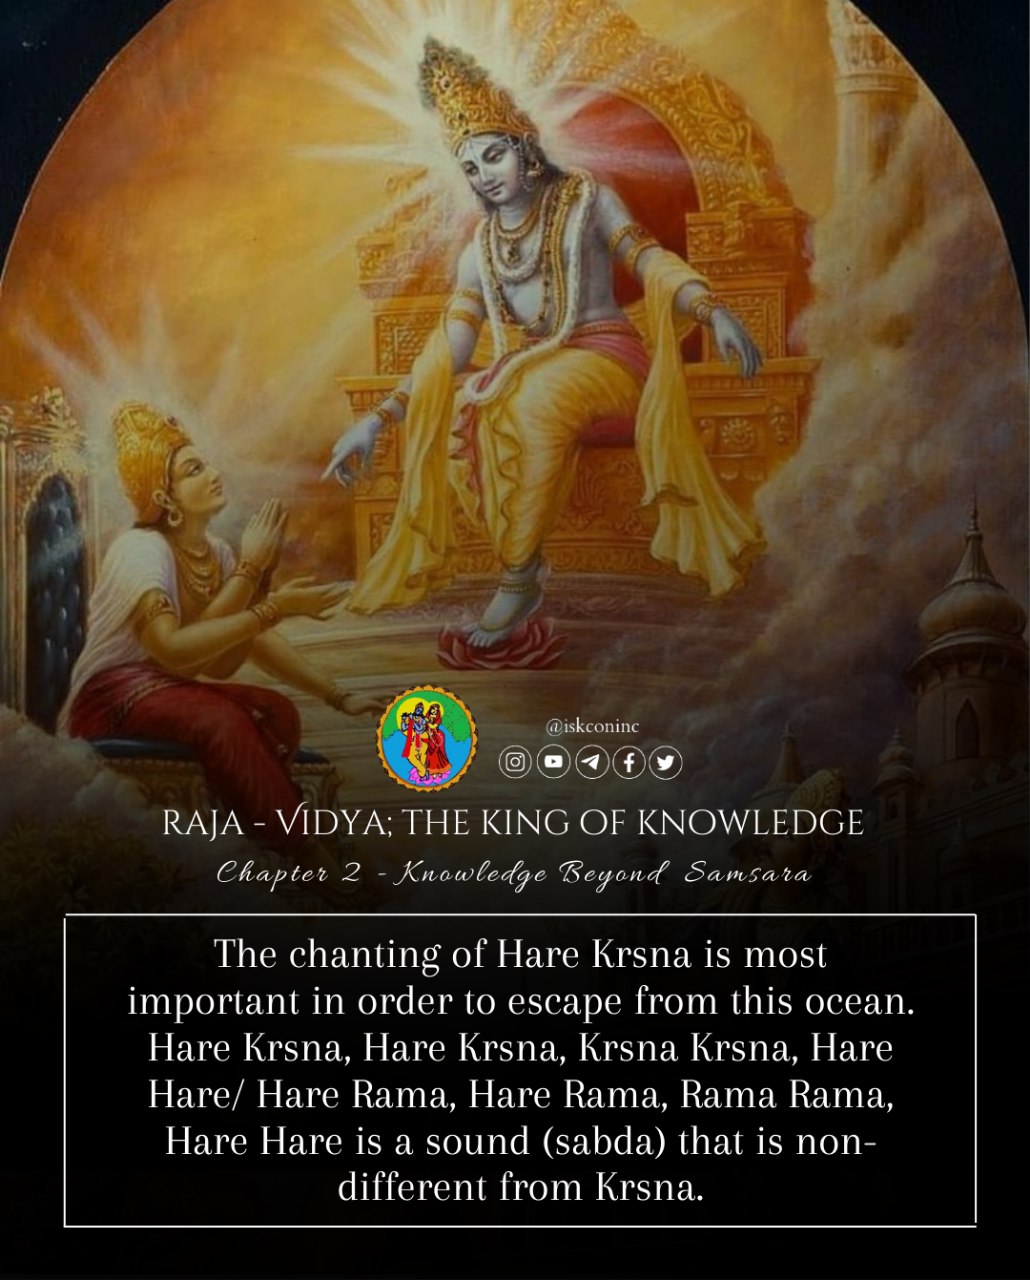 Hare Krishna, Hare Krishna, Krishna Krishna, Hare Hare, Hare Rama